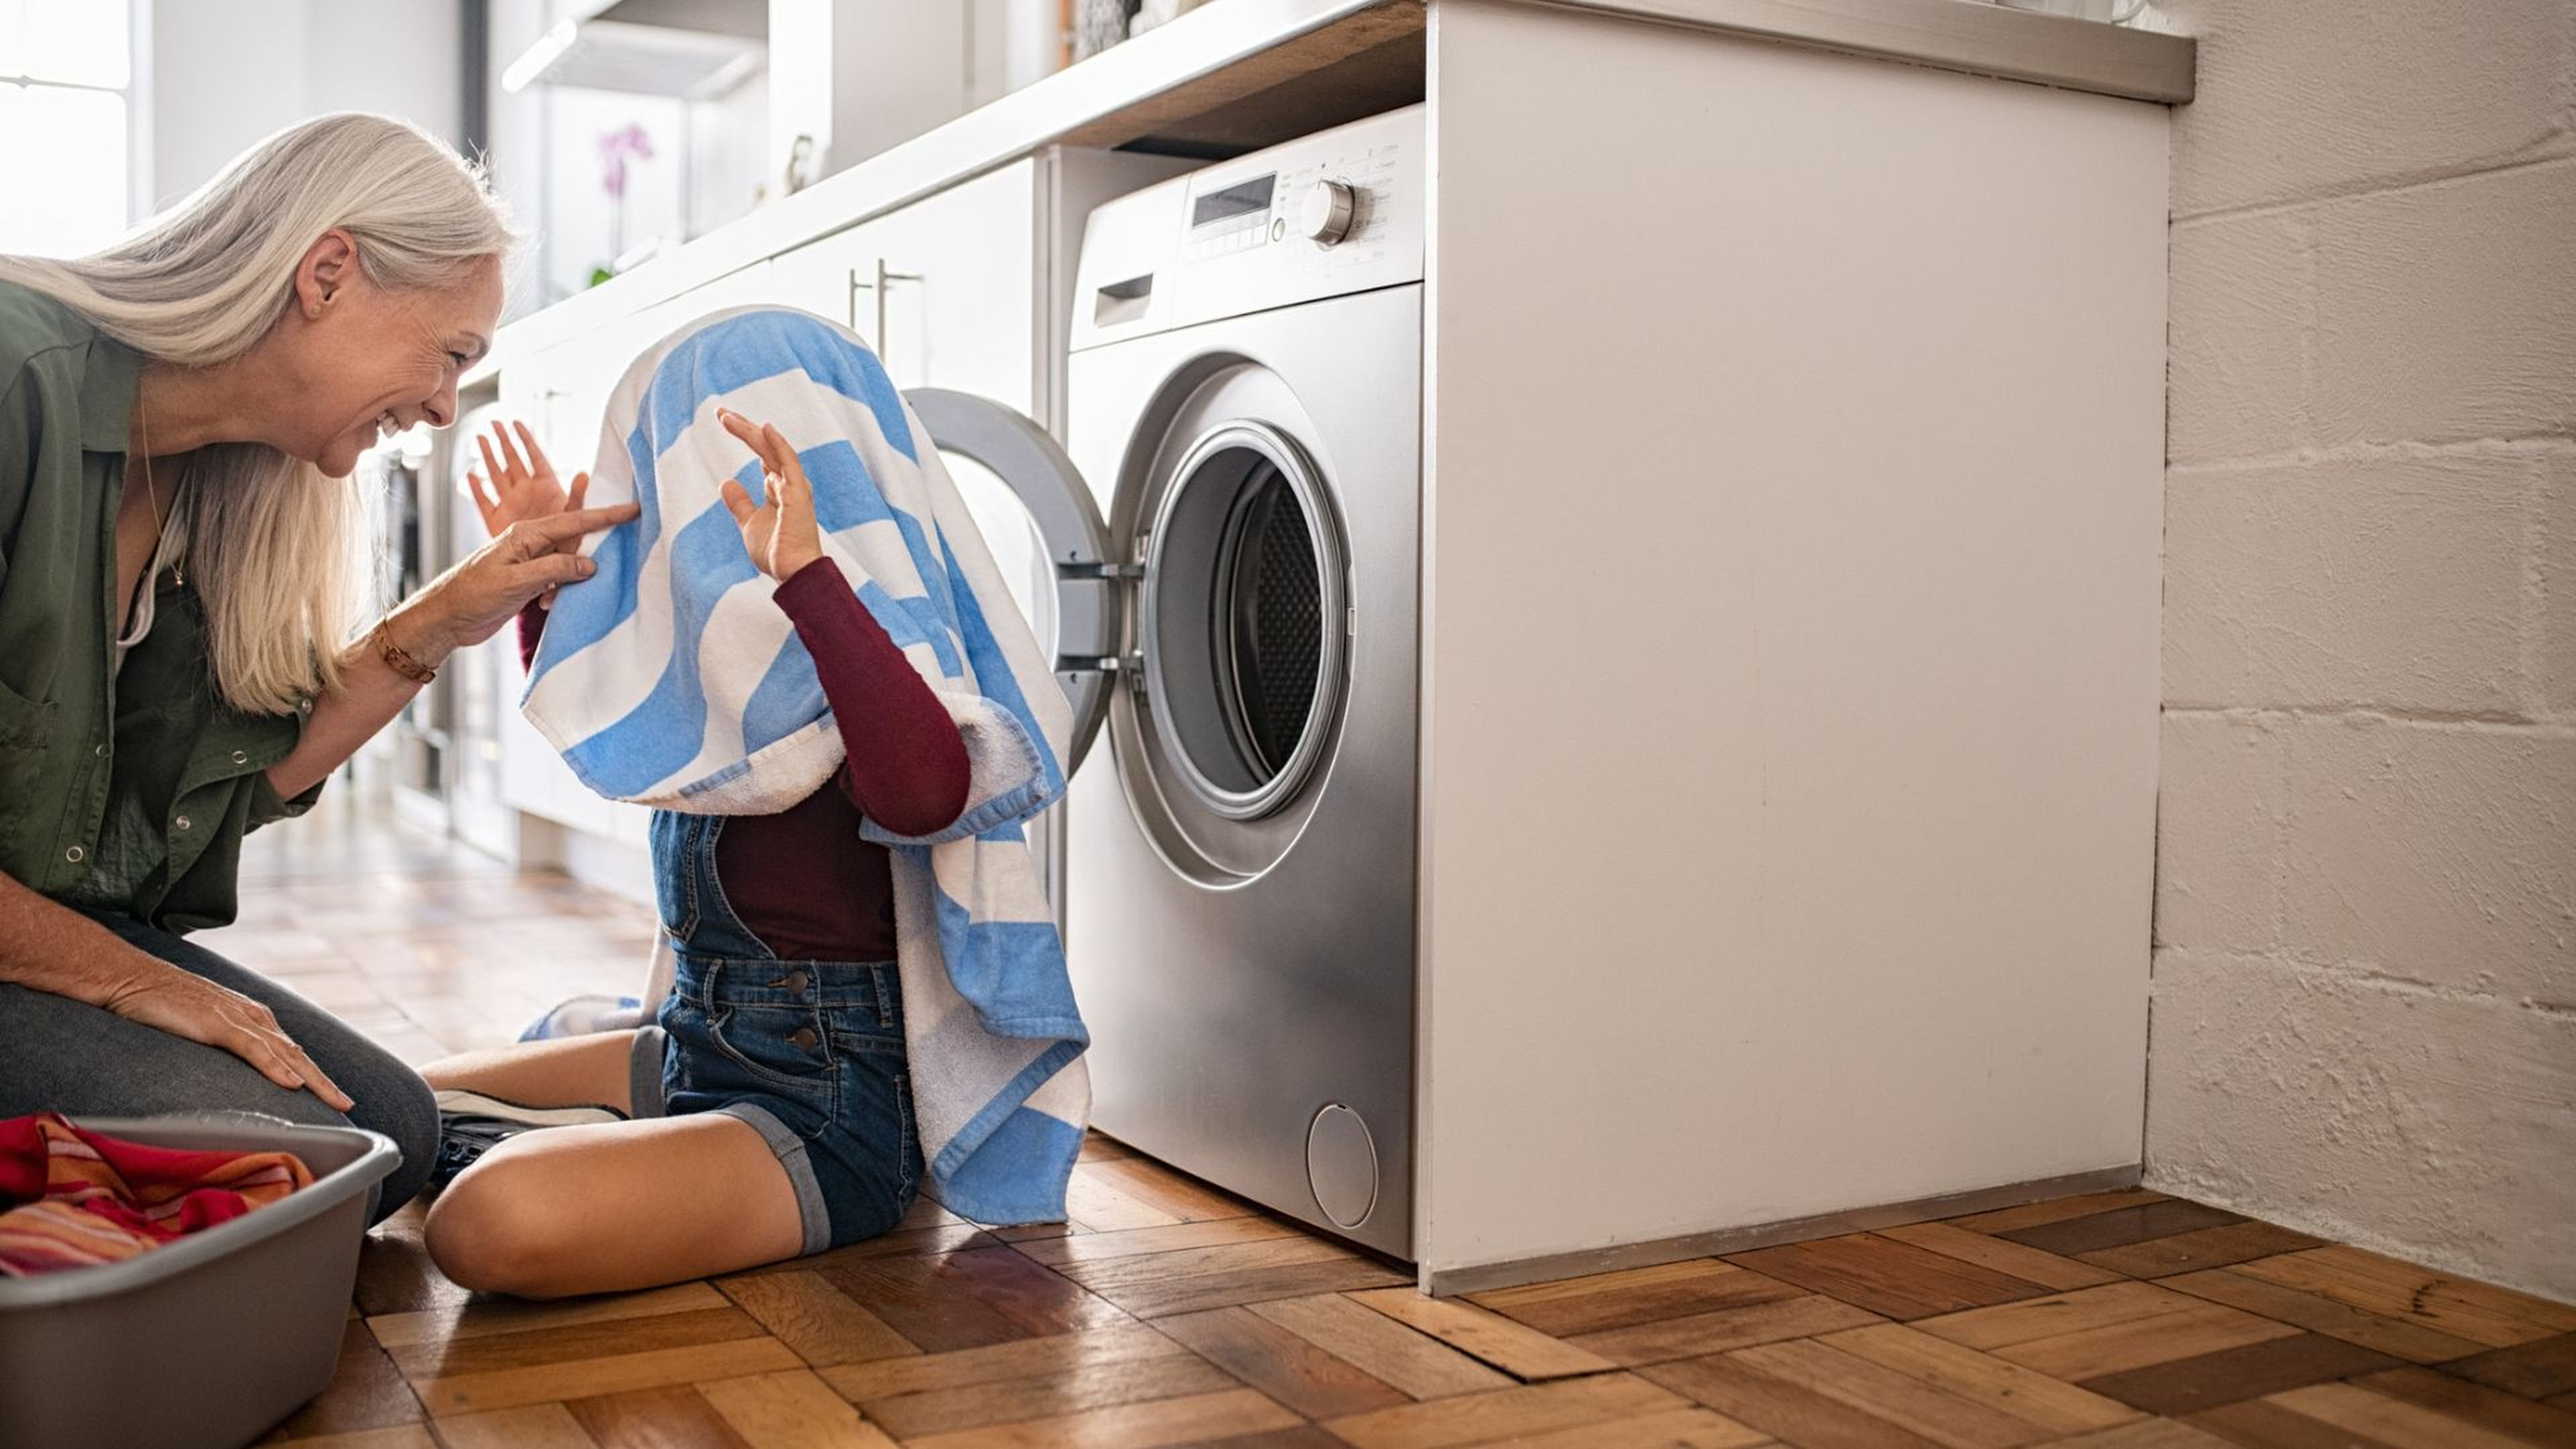 Una mujer juega con su nieta delante de la lavadora.